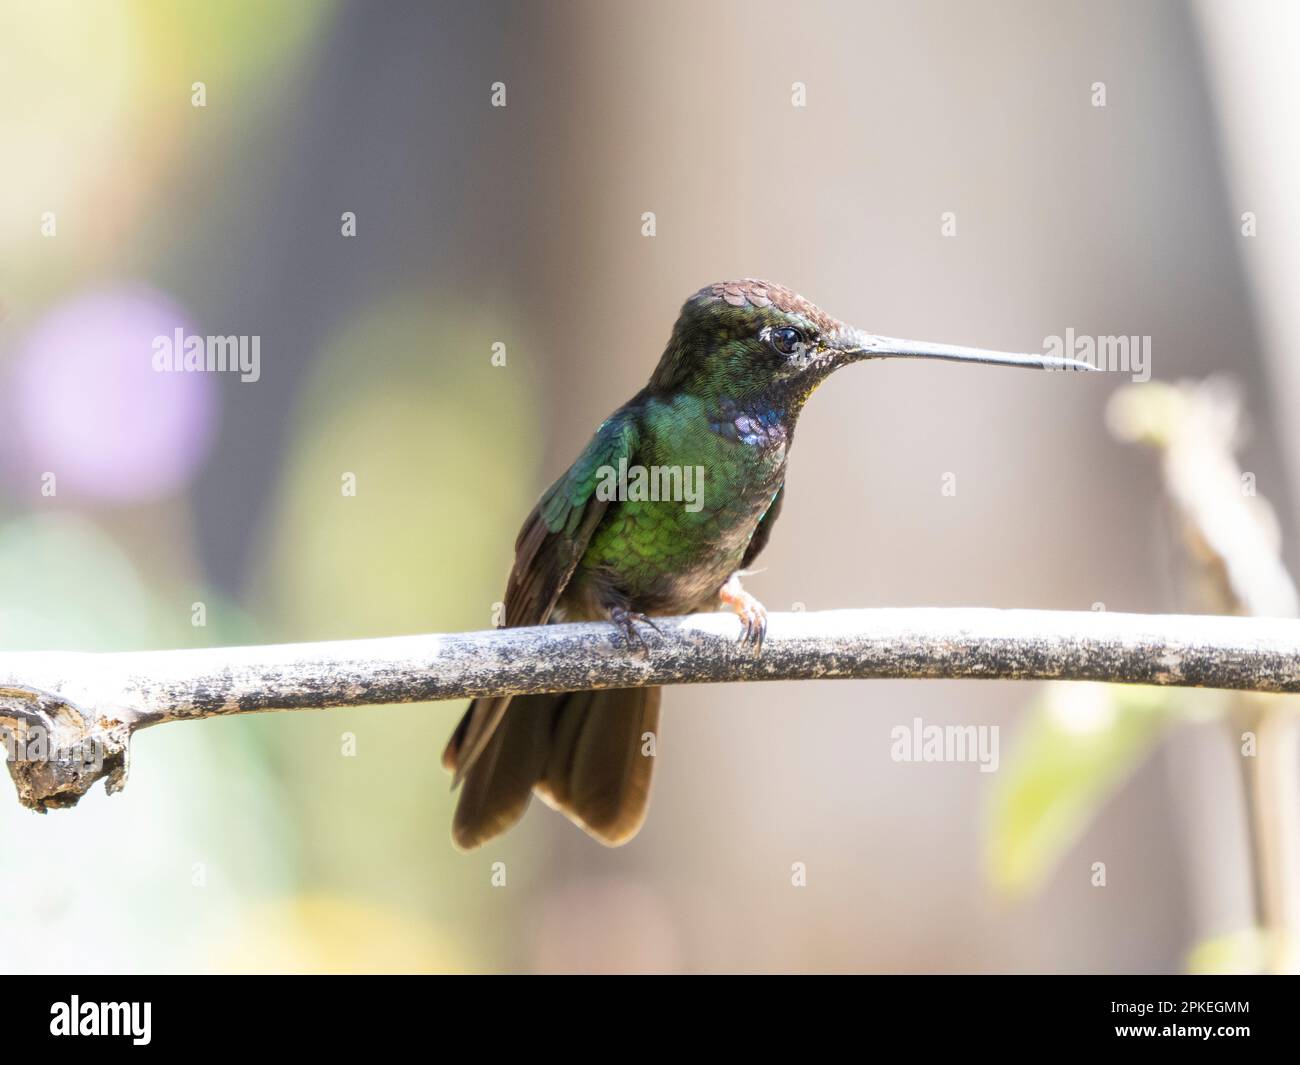 Talamanca hummingbird (Eugenes spectabilis) at Savegre, Costa Rica Stock Photo